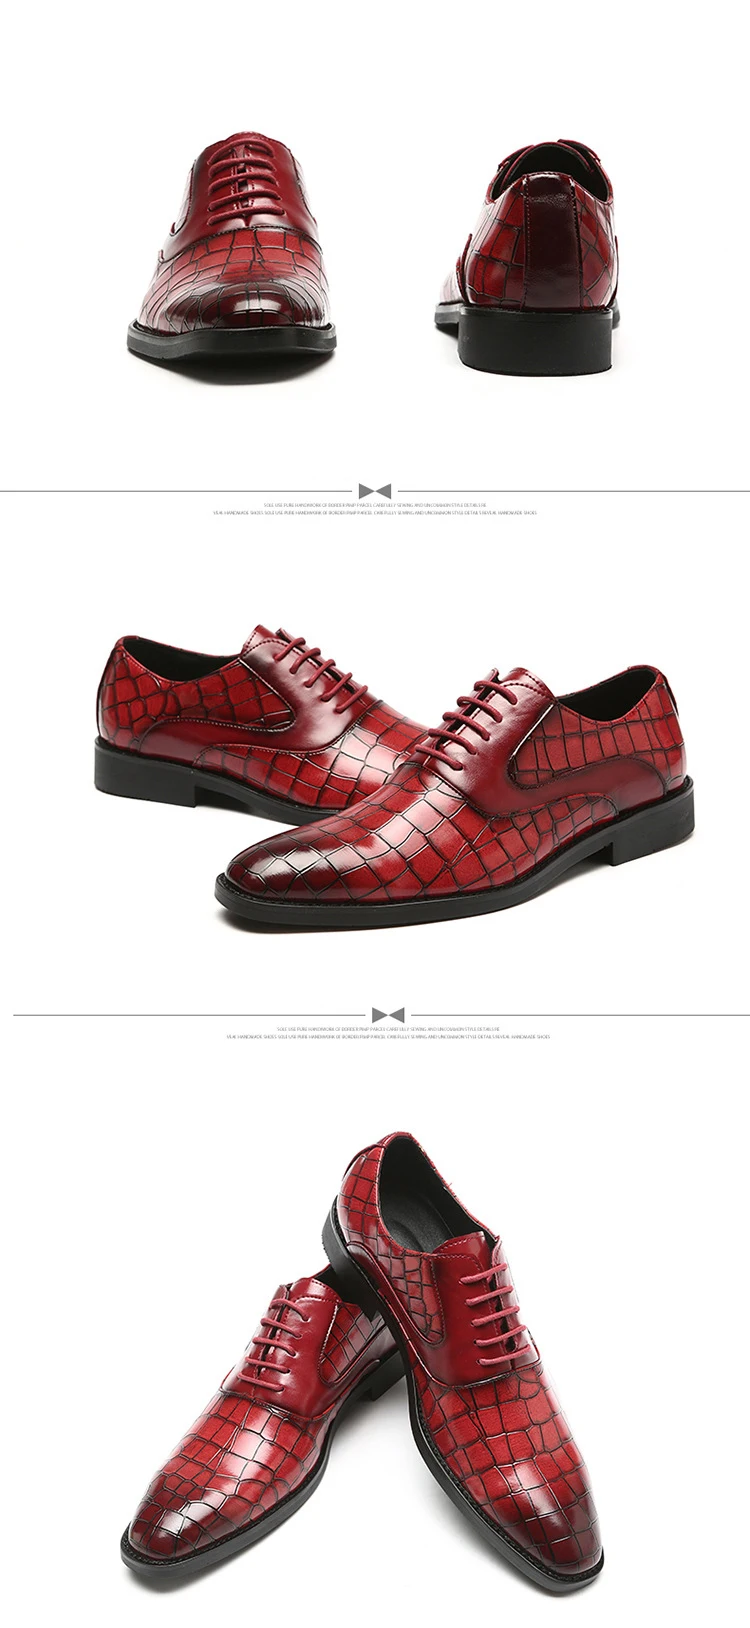 37-48 Мужская обувь; кожаная Удобная деловая стильная официальная обувь для мужчин;# CB705